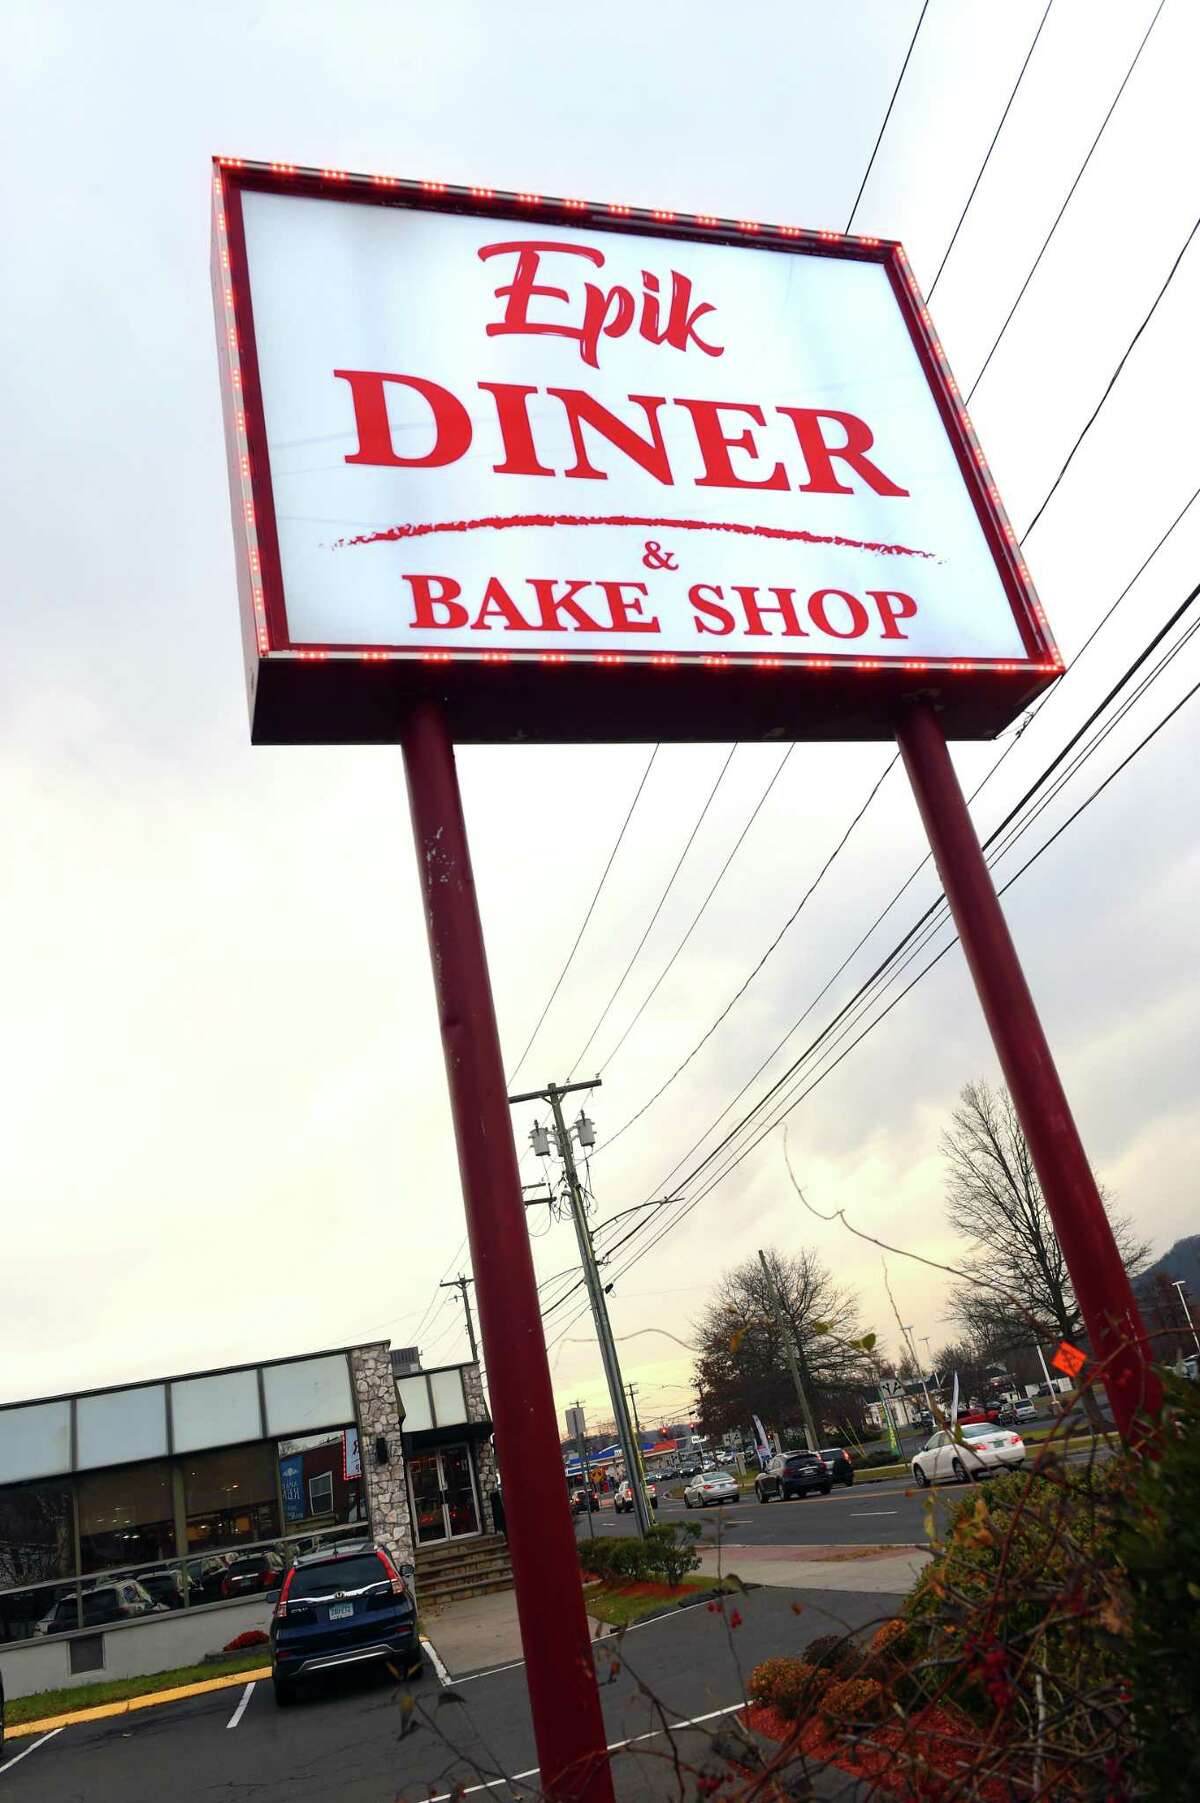 Epik Diner & Bake Shop in New Haven.